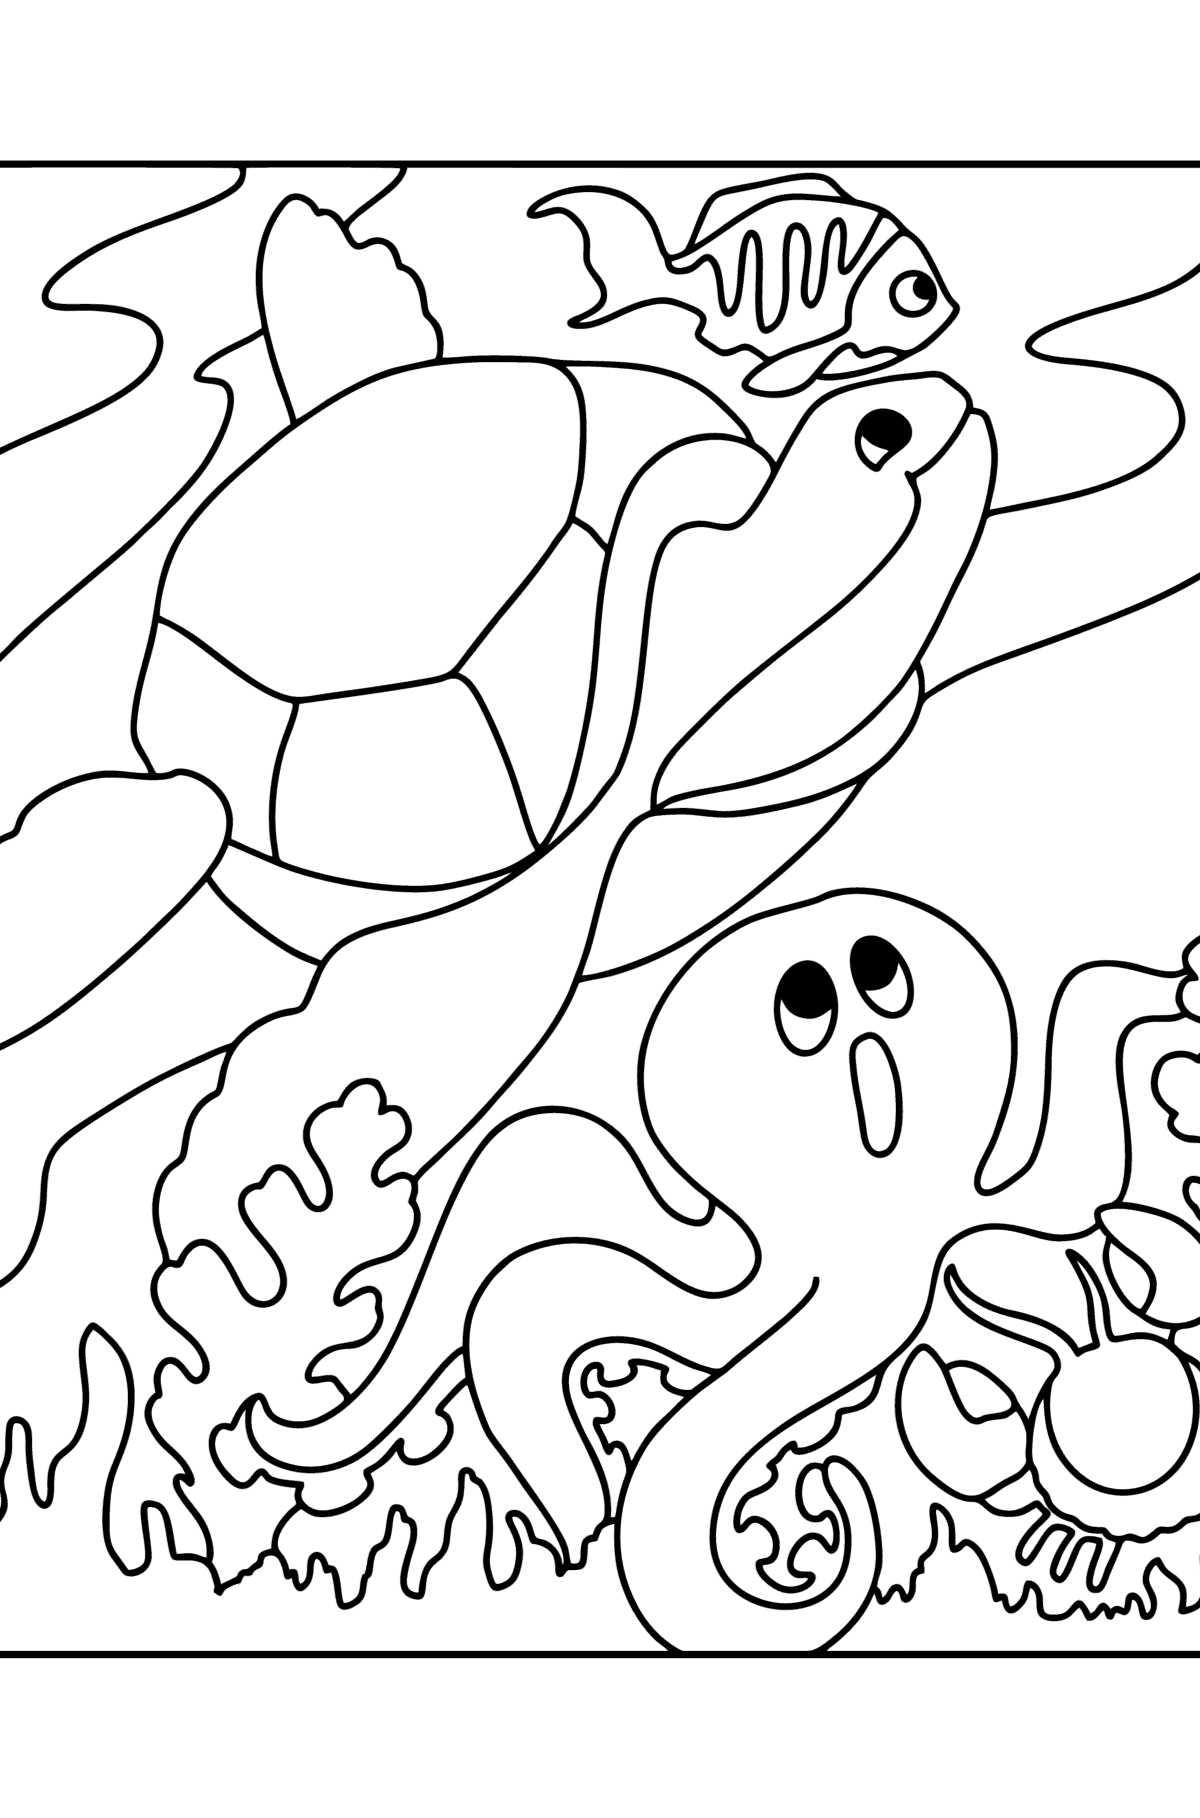 Kleurplaat vis, schildpad, krab en octopus - kleurplaten voor kinderen